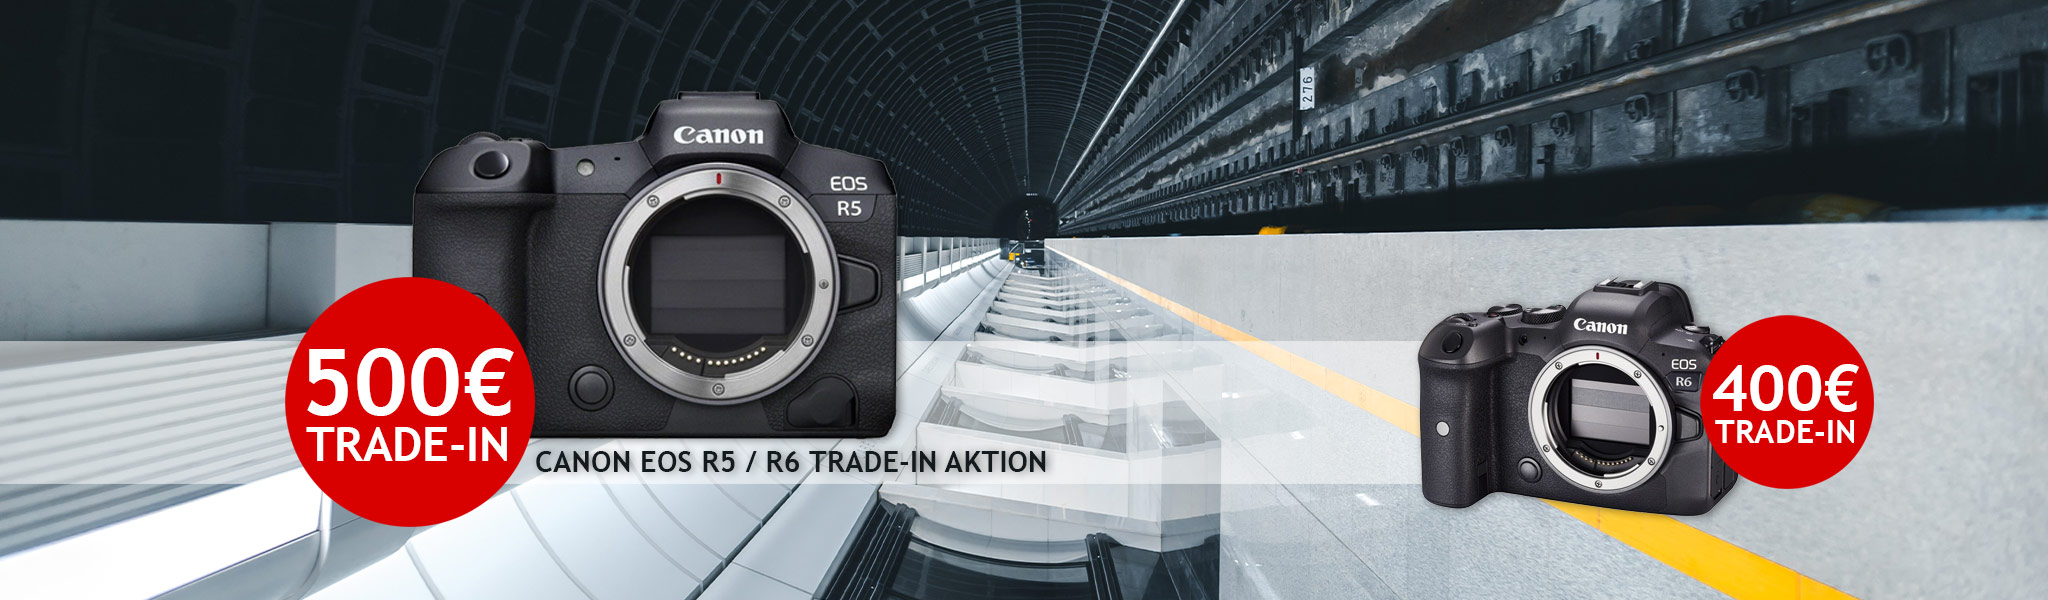 Canon EOS R5 und R6 Trade-In Aktion bei Fotomax in Nürnberg und Berlin